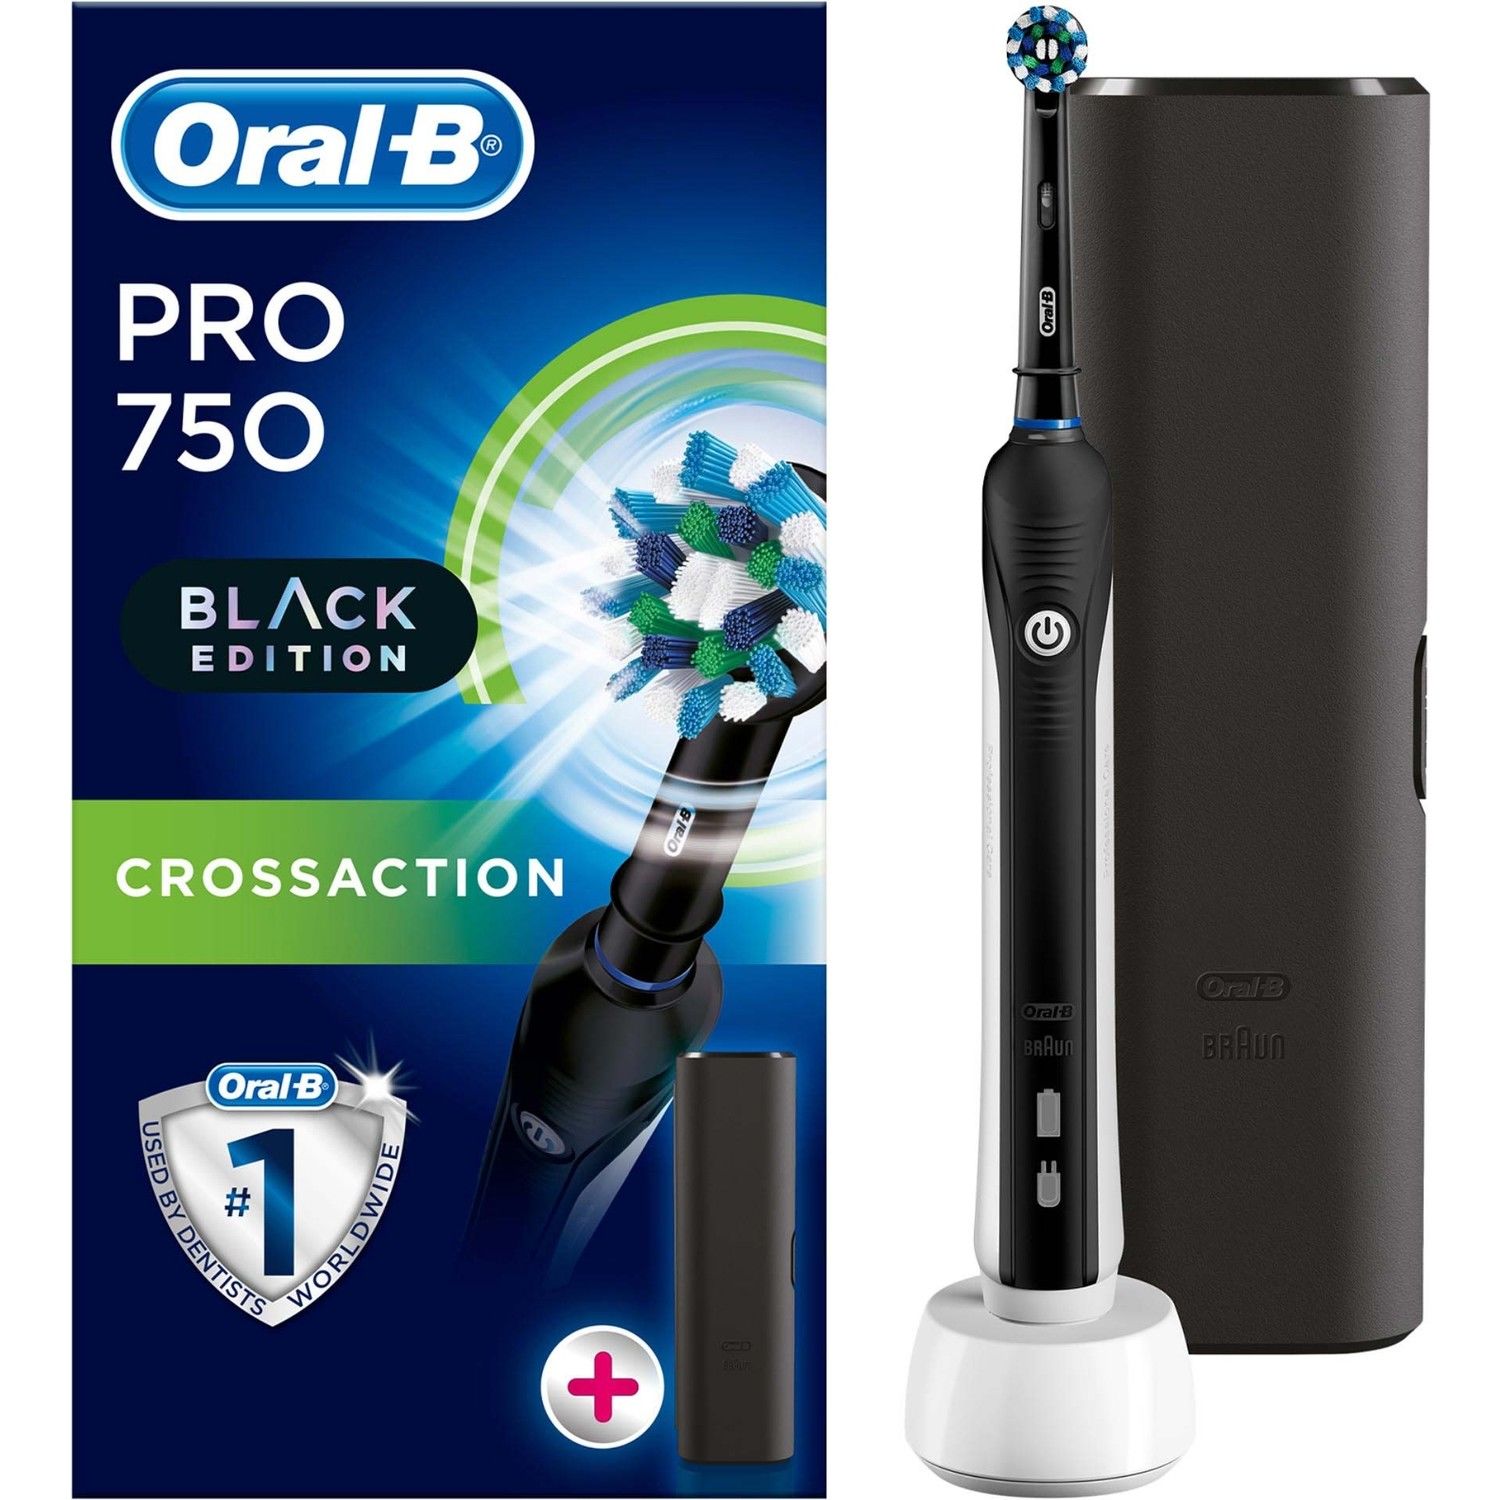 Oral-B Pro 750 Şarj Edilebilir Diş Fırçası Cross Action Siyah